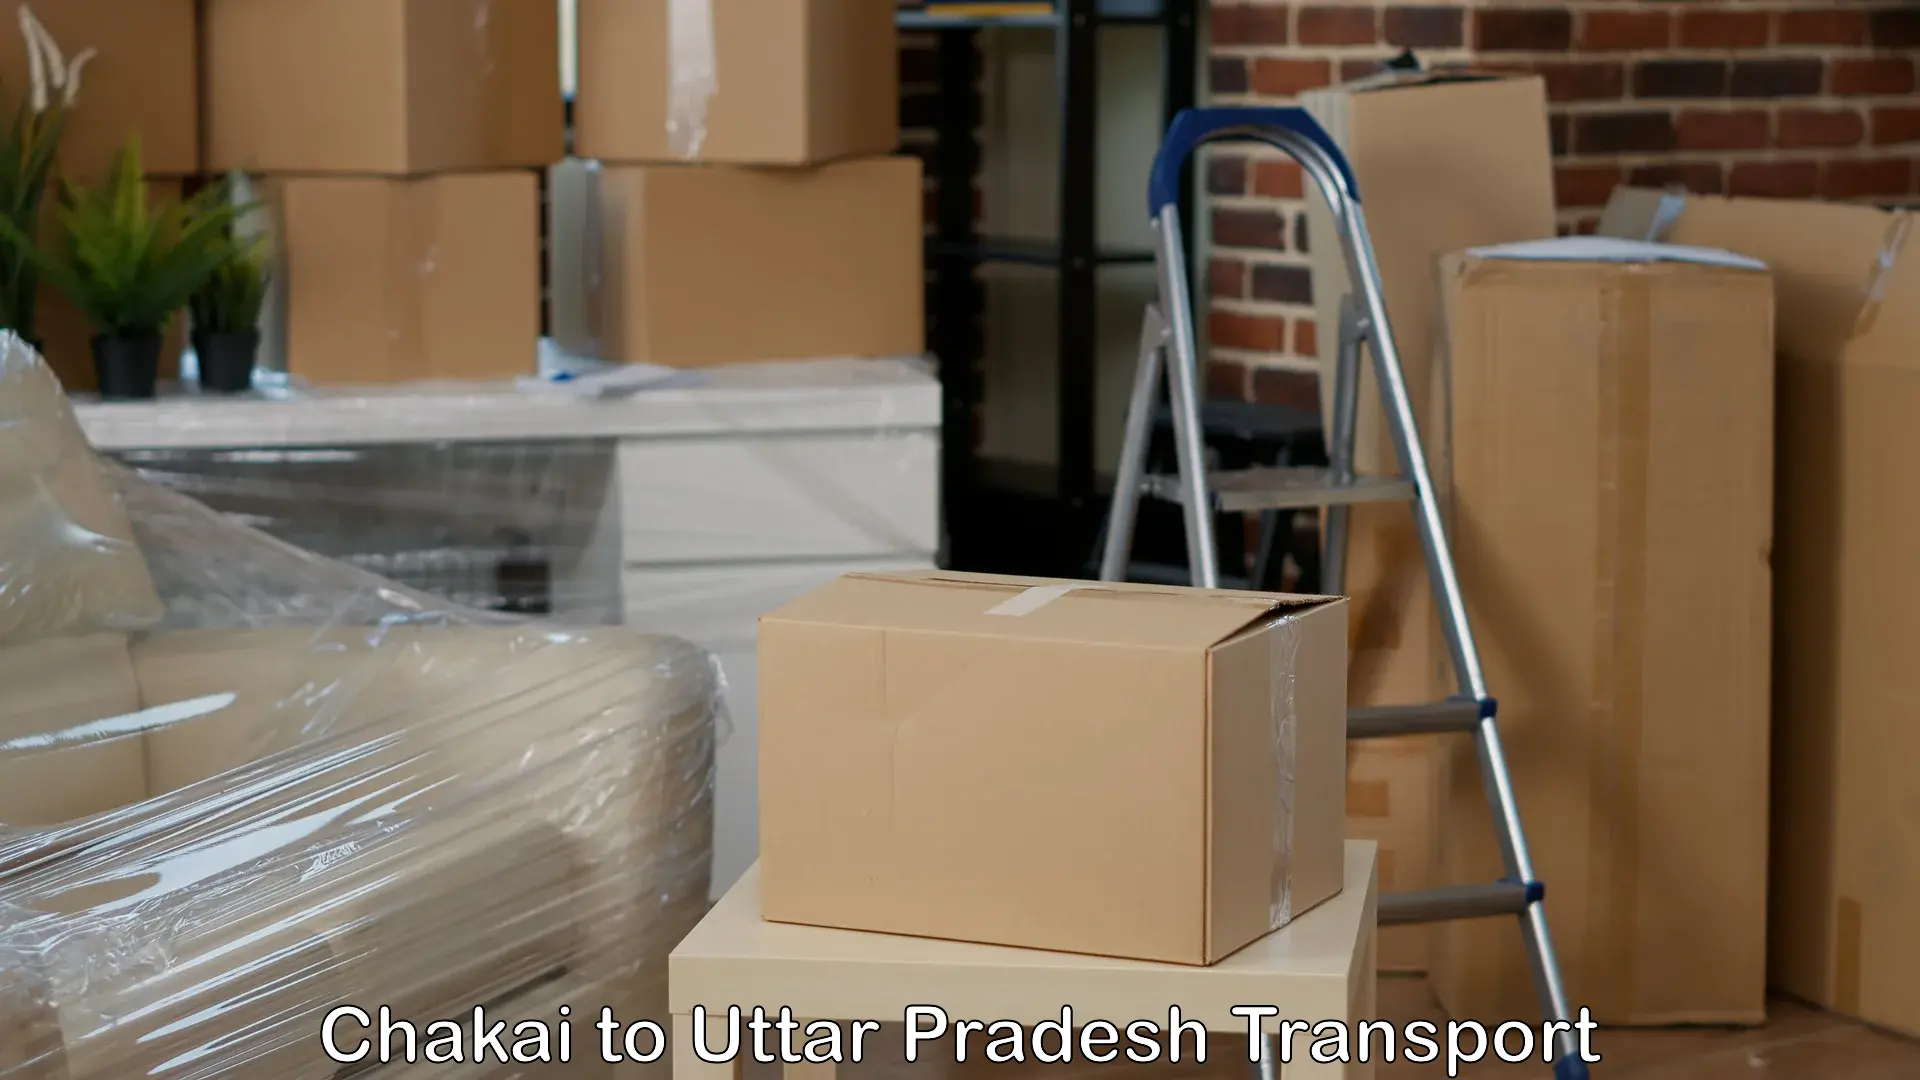 Furniture transport service Chakai to IIT Varanasi